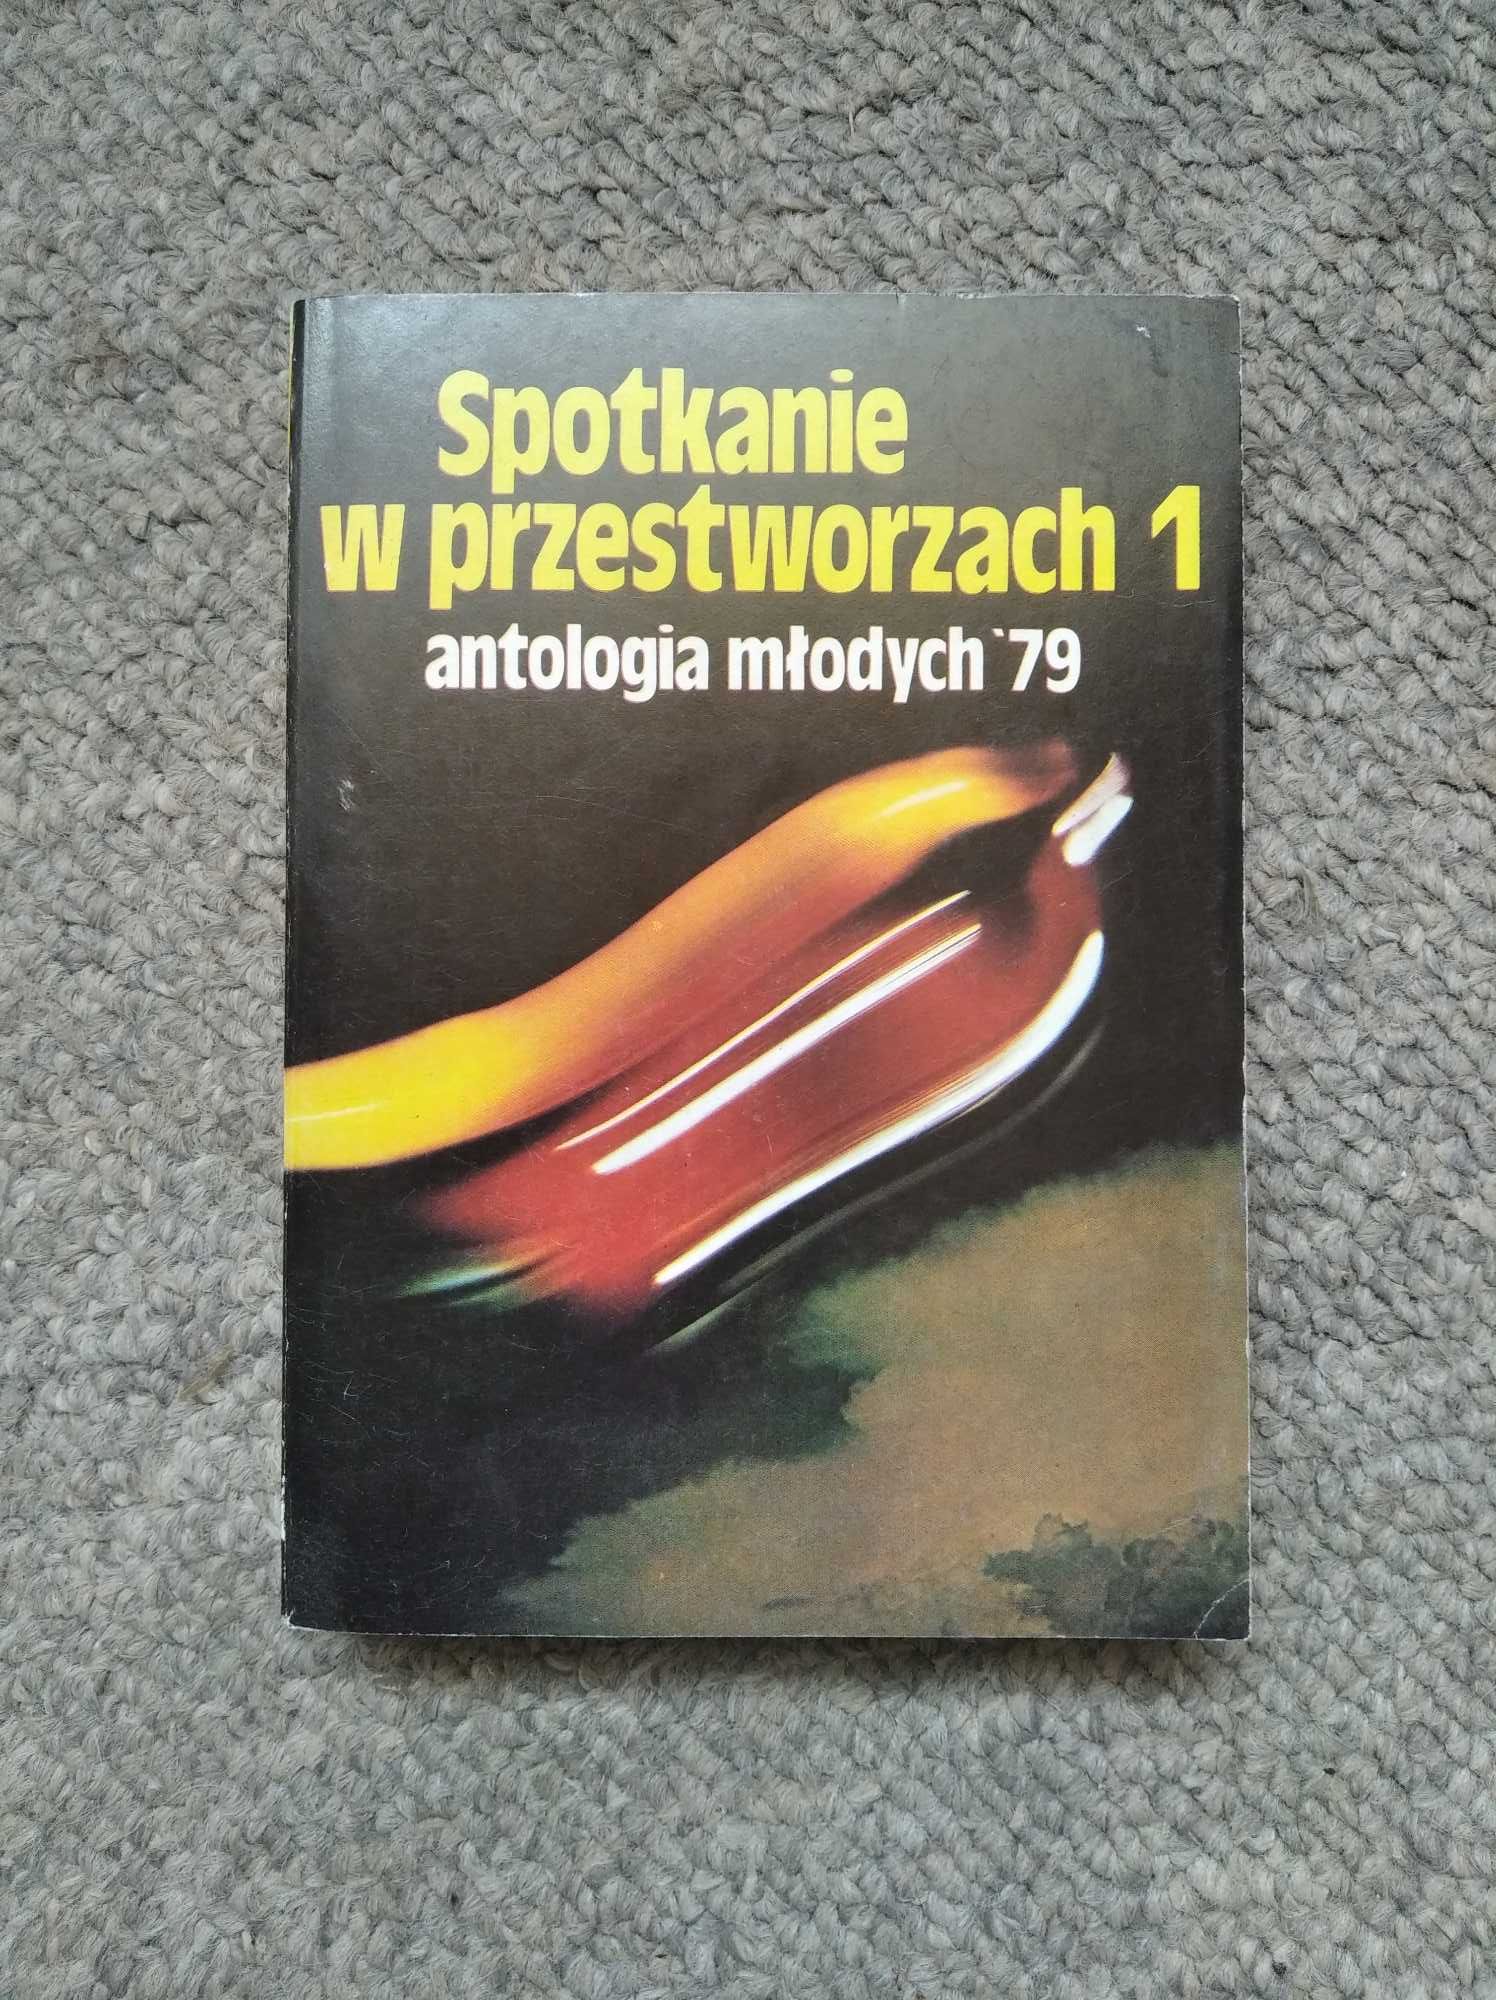 Drzewiński Dworak Spotkanie w przestworzach 1 antologia młodych '79